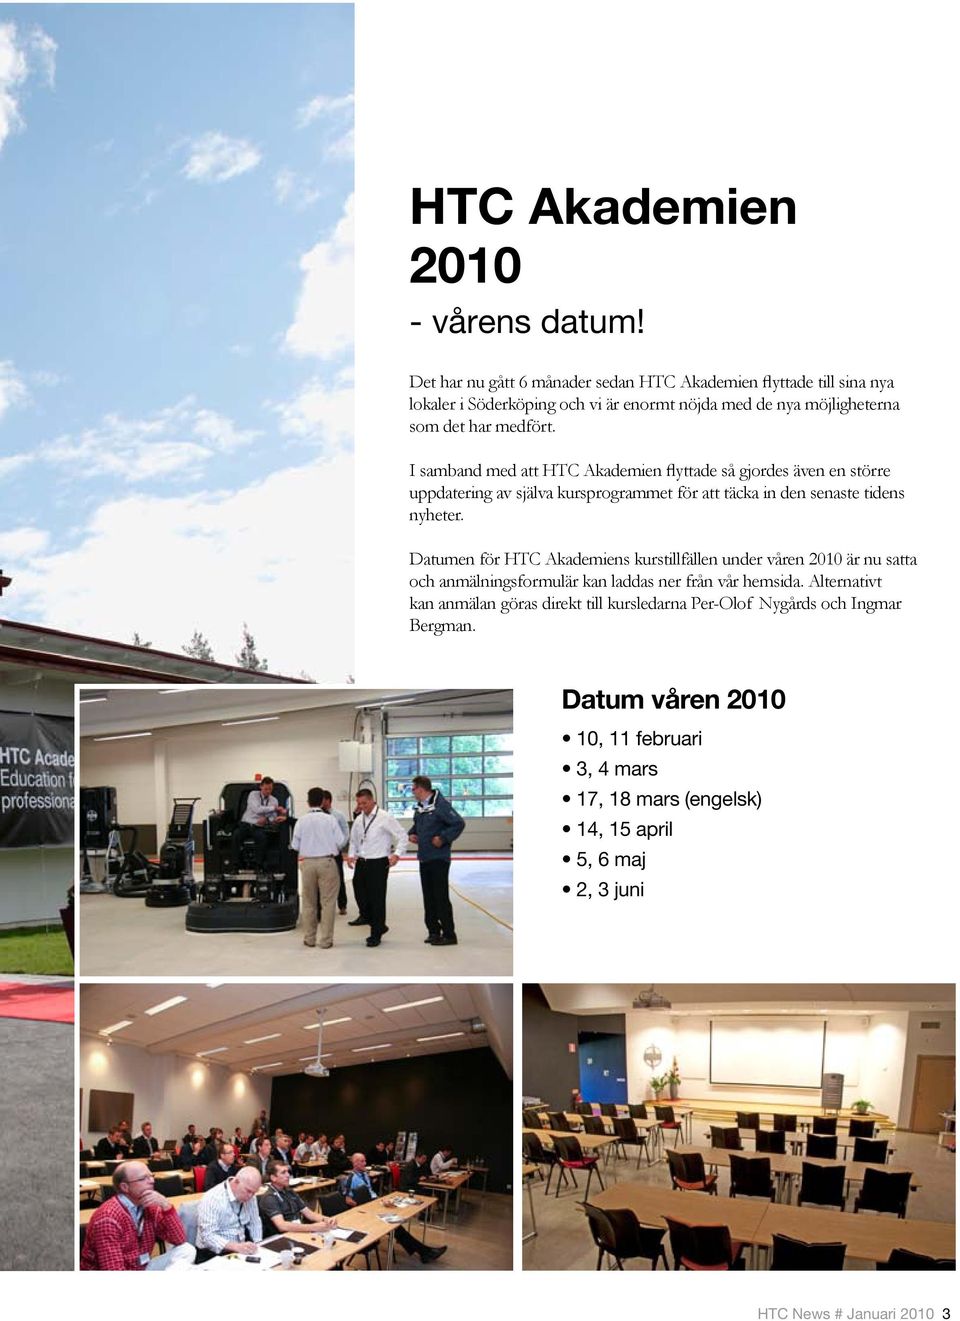 I samband med att HTC Akademien flyttade så gjordes även en större uppdatering av själva kursprogrammet för att täcka in den senaste tidens nyheter.